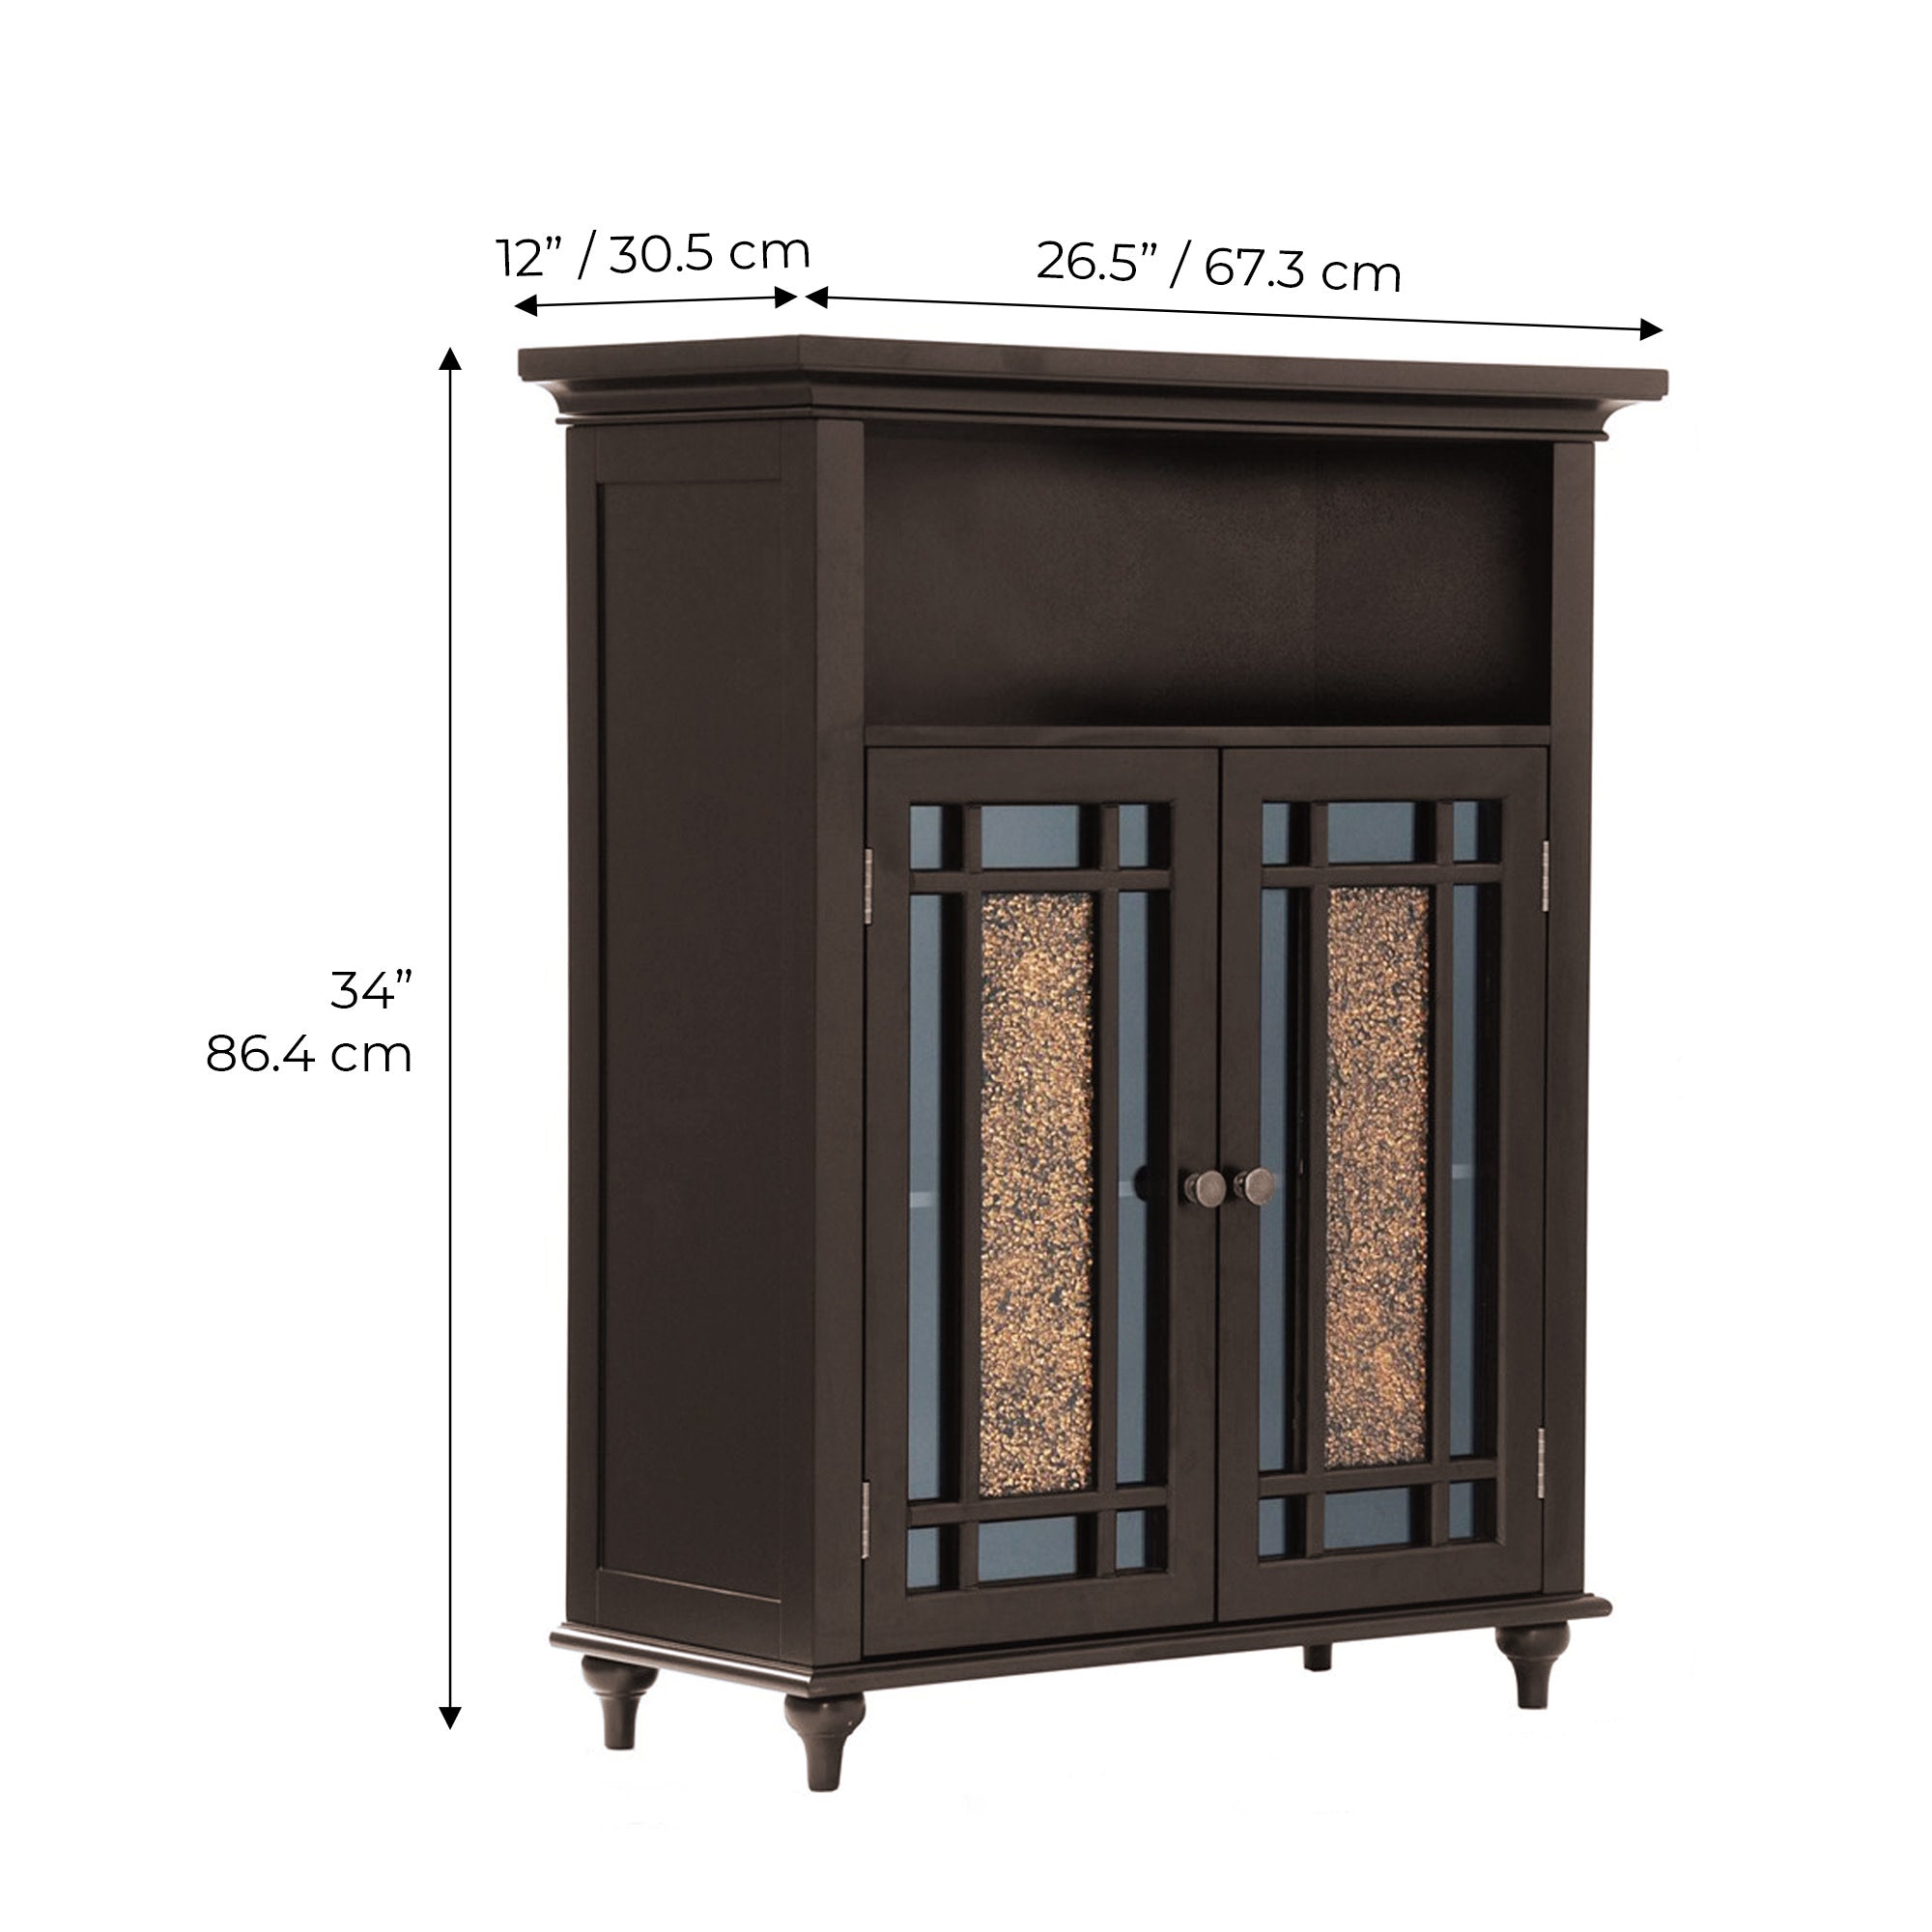 Teamson Home Windsor Wooden Floor Cabinet with Glass Mosaic Doors, Dark Espresso